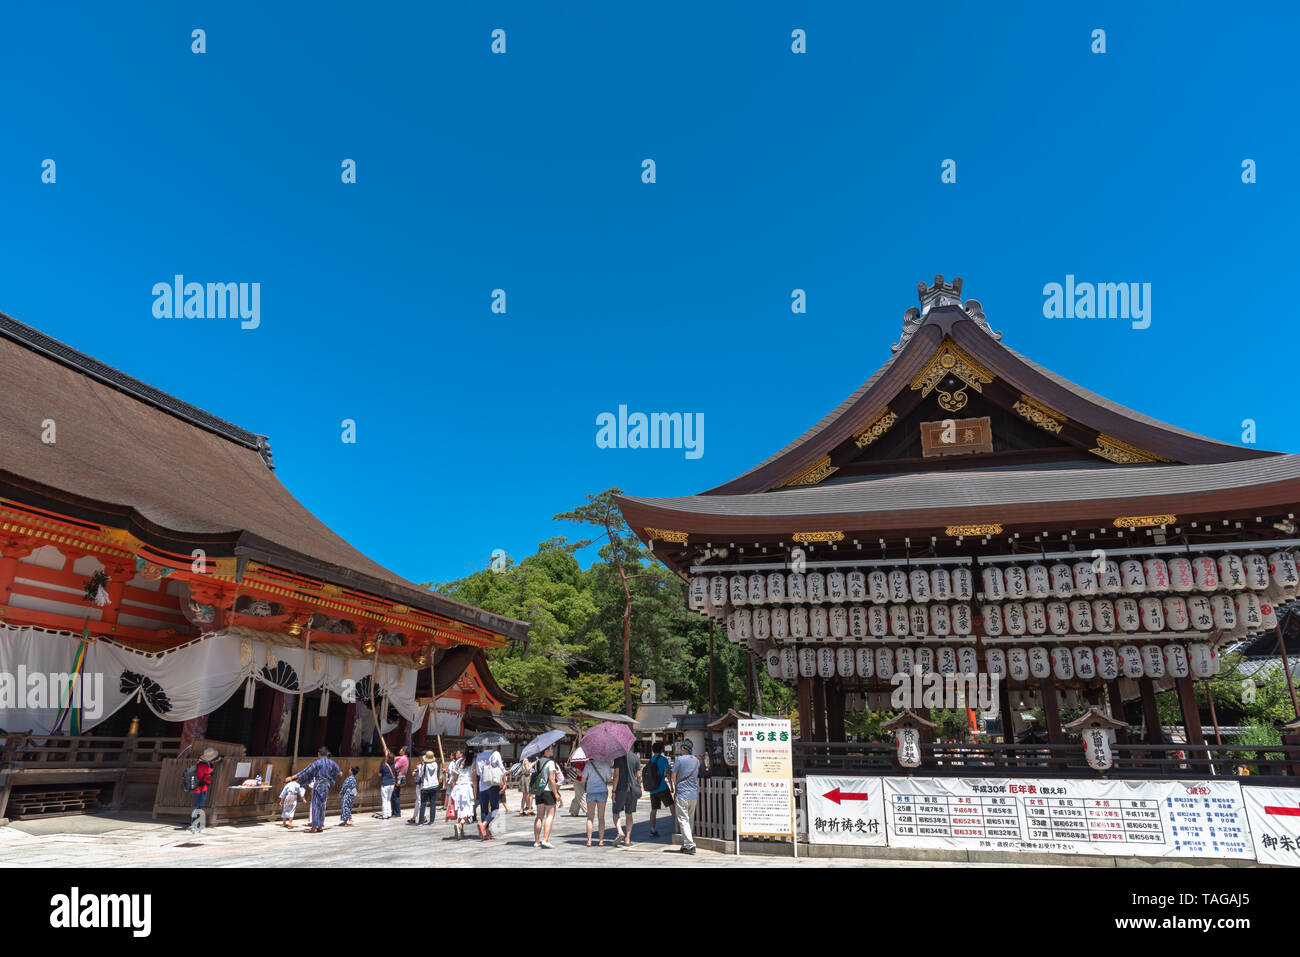 Yasaka o Santuario de Gion. Yasaka es uno de los más famosos santuarios en Kioto entre el distrito Gion y Distrito Higashiyama. Foto de stock